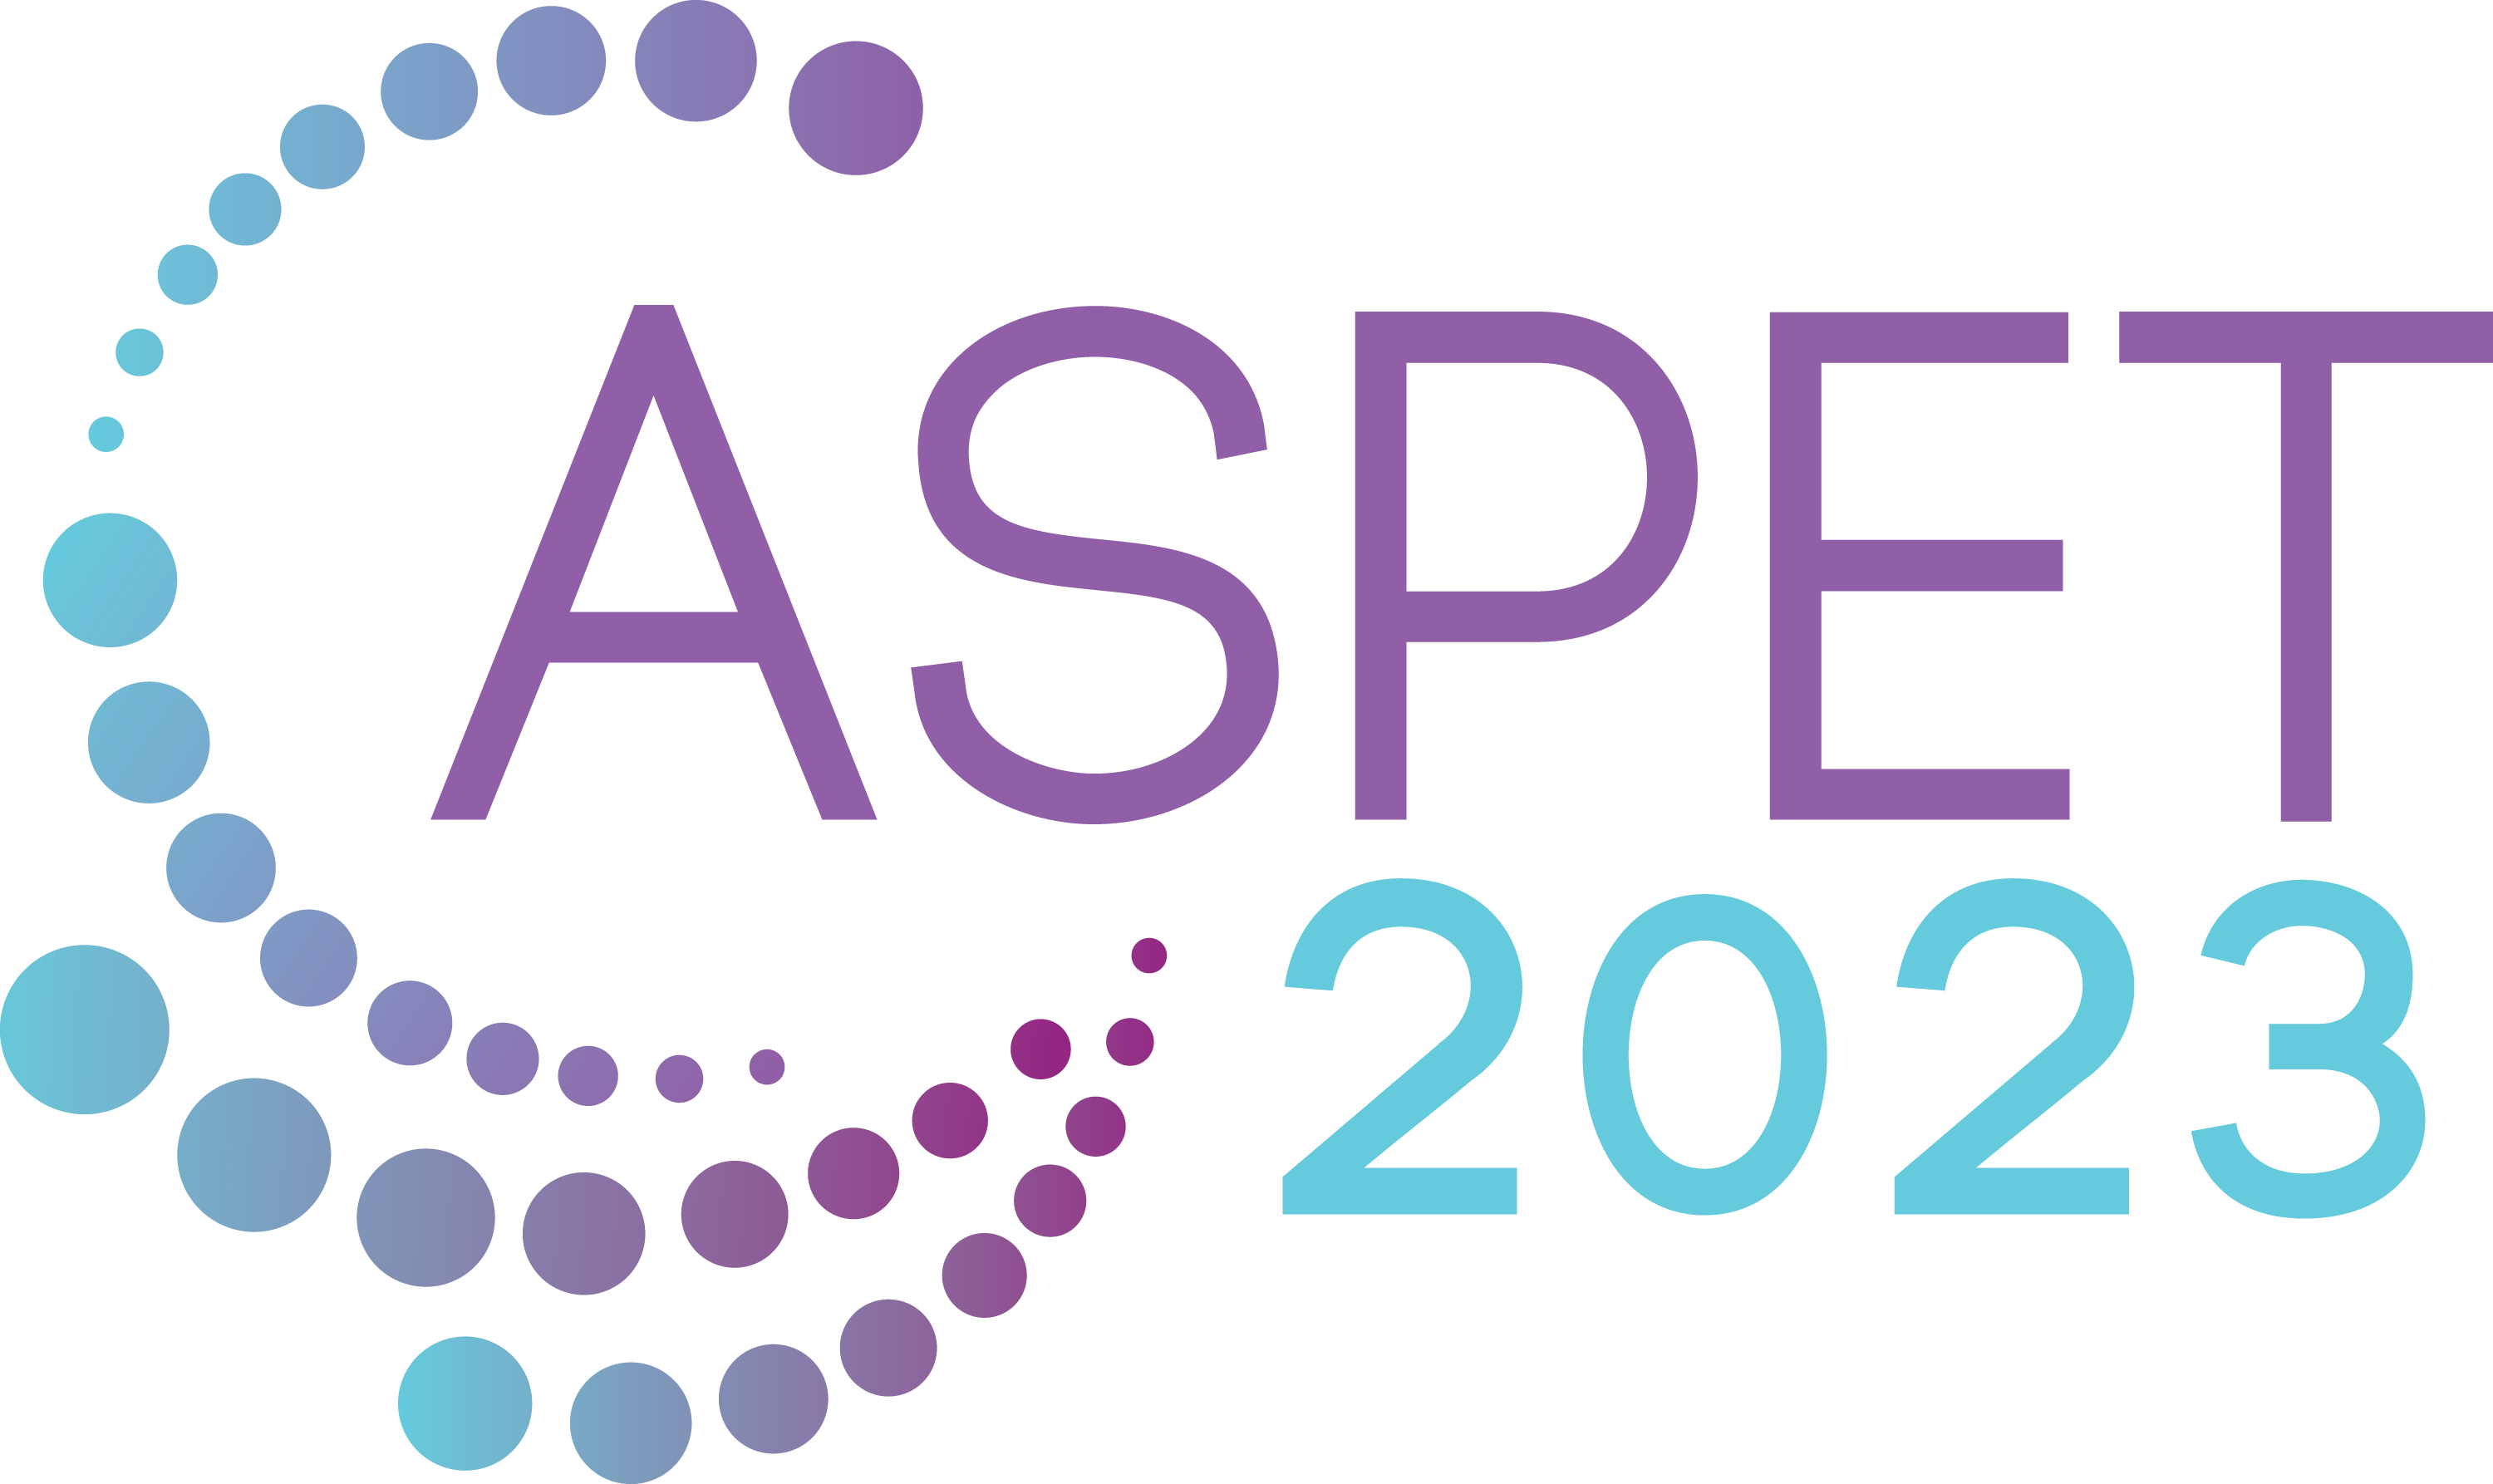 ASPET ASPET 2023